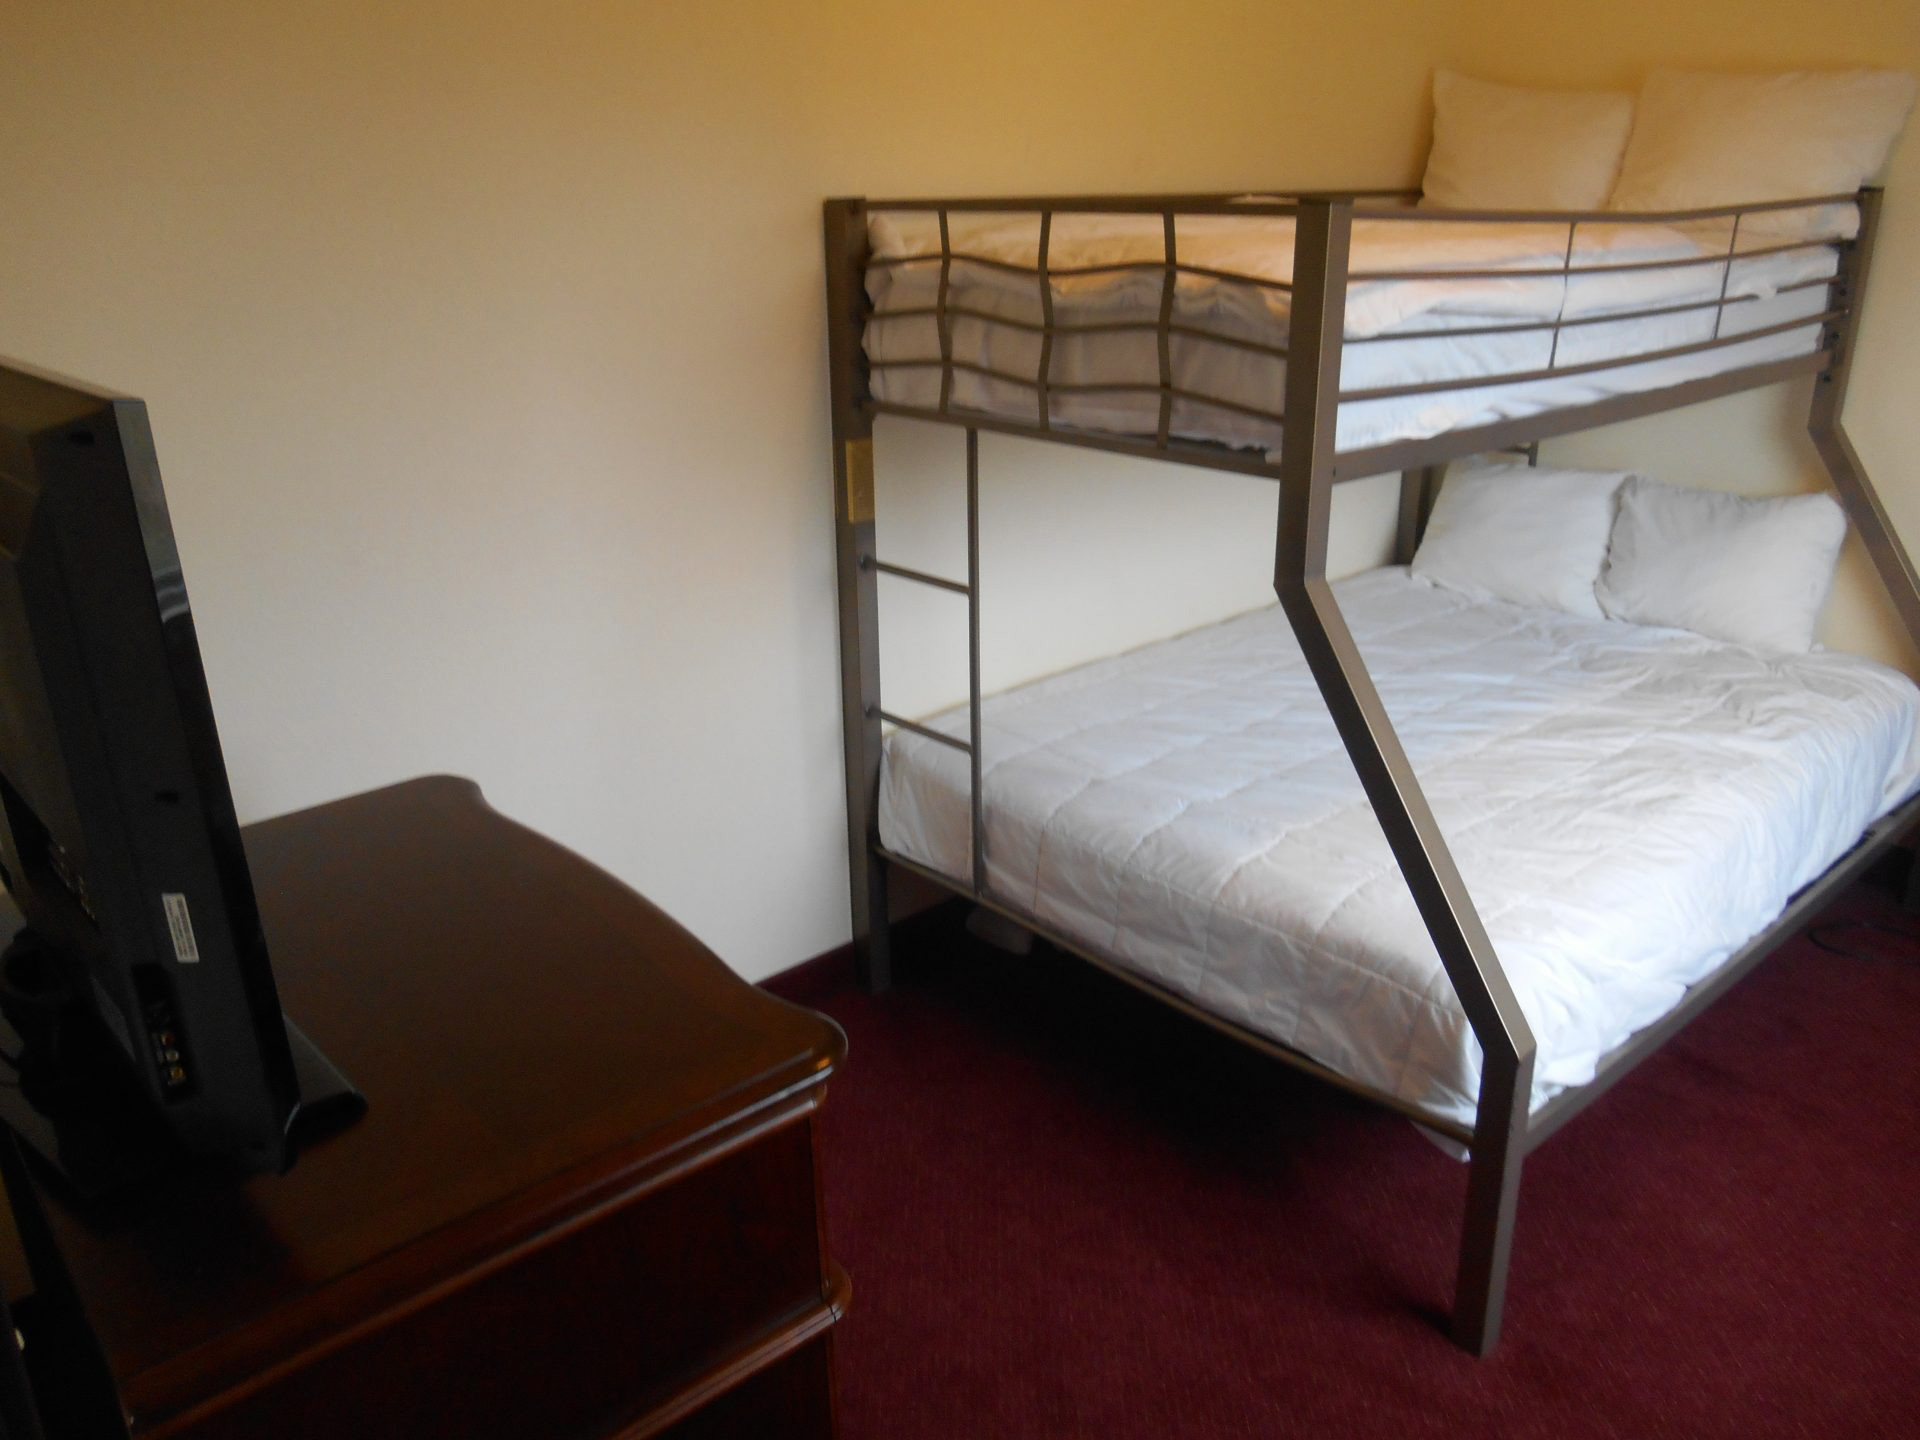 Room Suite Bunk-beds